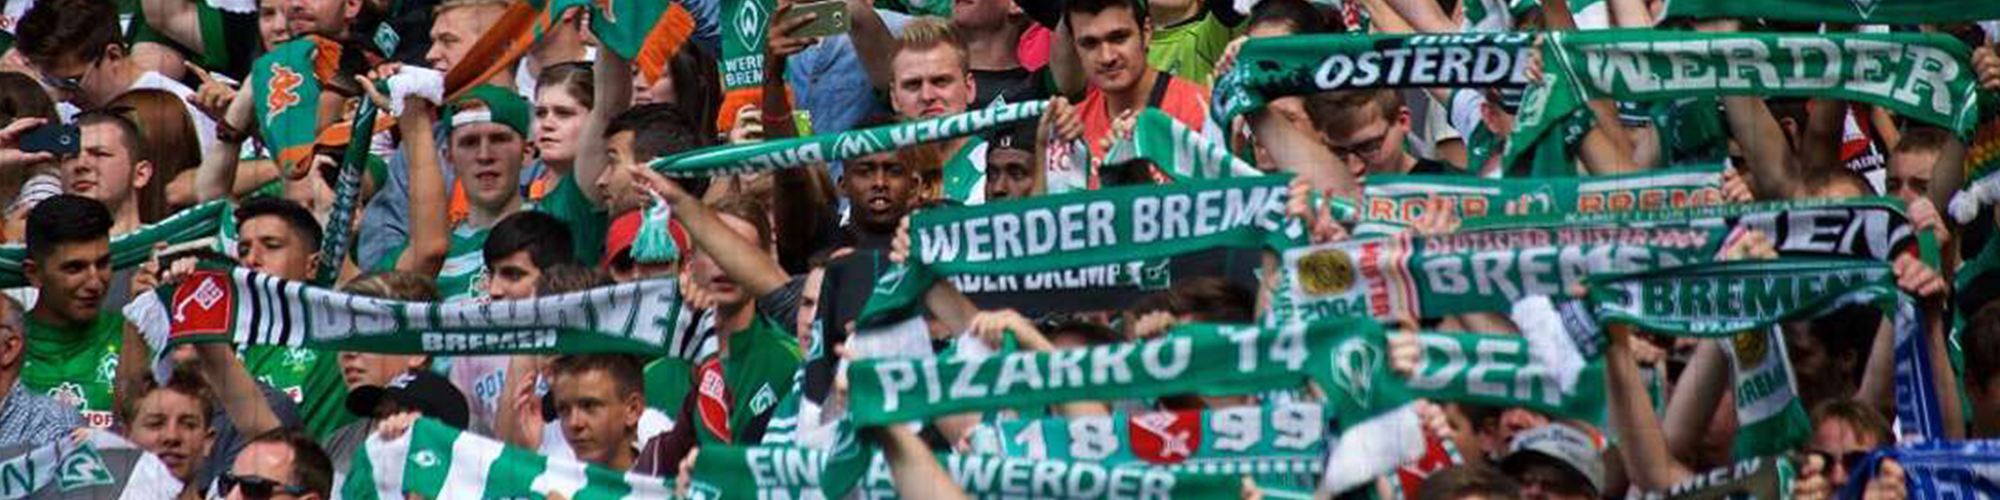 Werder Bremen Tickets & Experiences